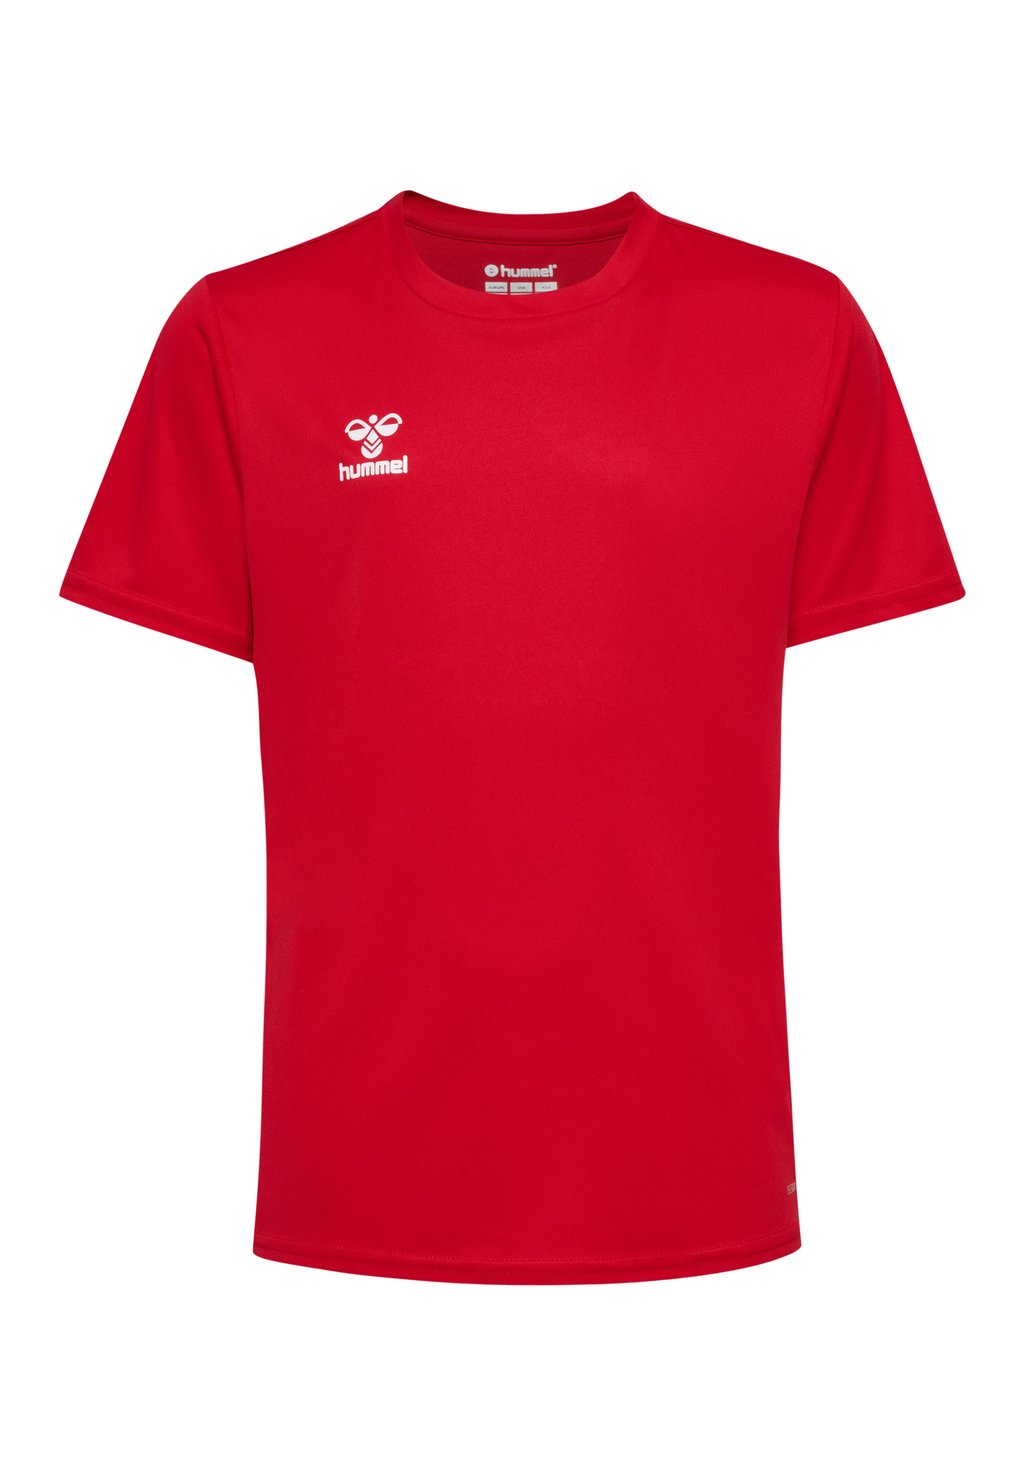 Футболка базовая ESSENTIAL SS Hummel, цвет true red базовая футболка essential ss hummel черный